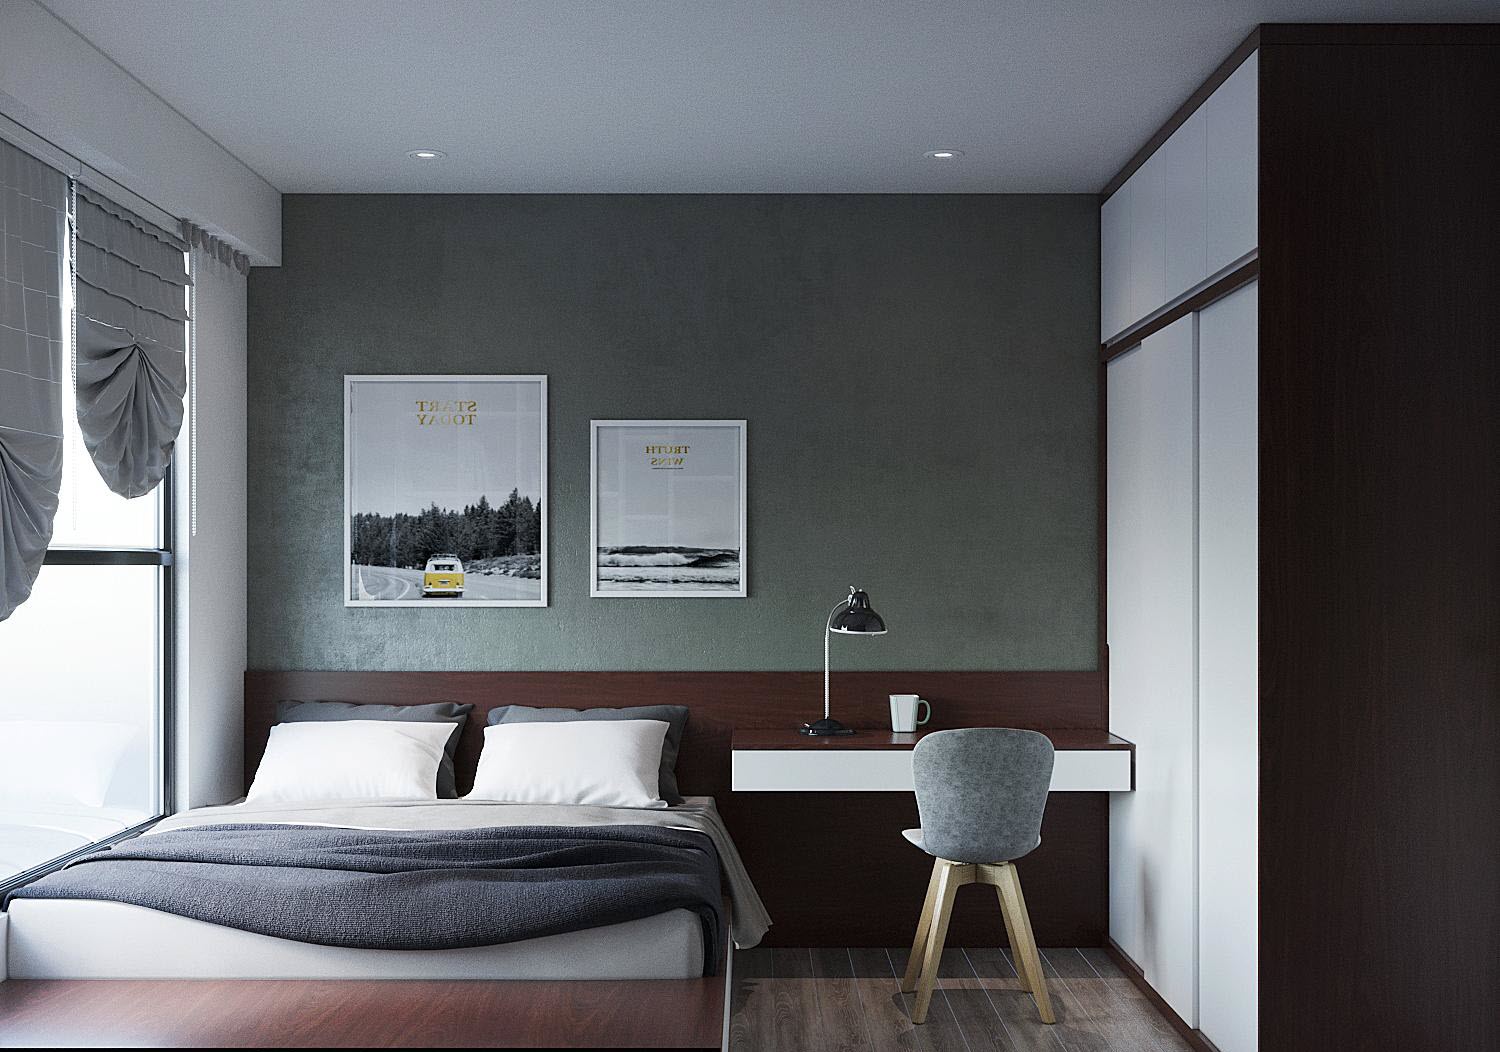 Phòng ngủ thứ hai trong căn hộ 75m2 có thiết kế tương tự với tường đầu giường màu xám xanh dịu mắt, tạo cảm giác thư giãn.